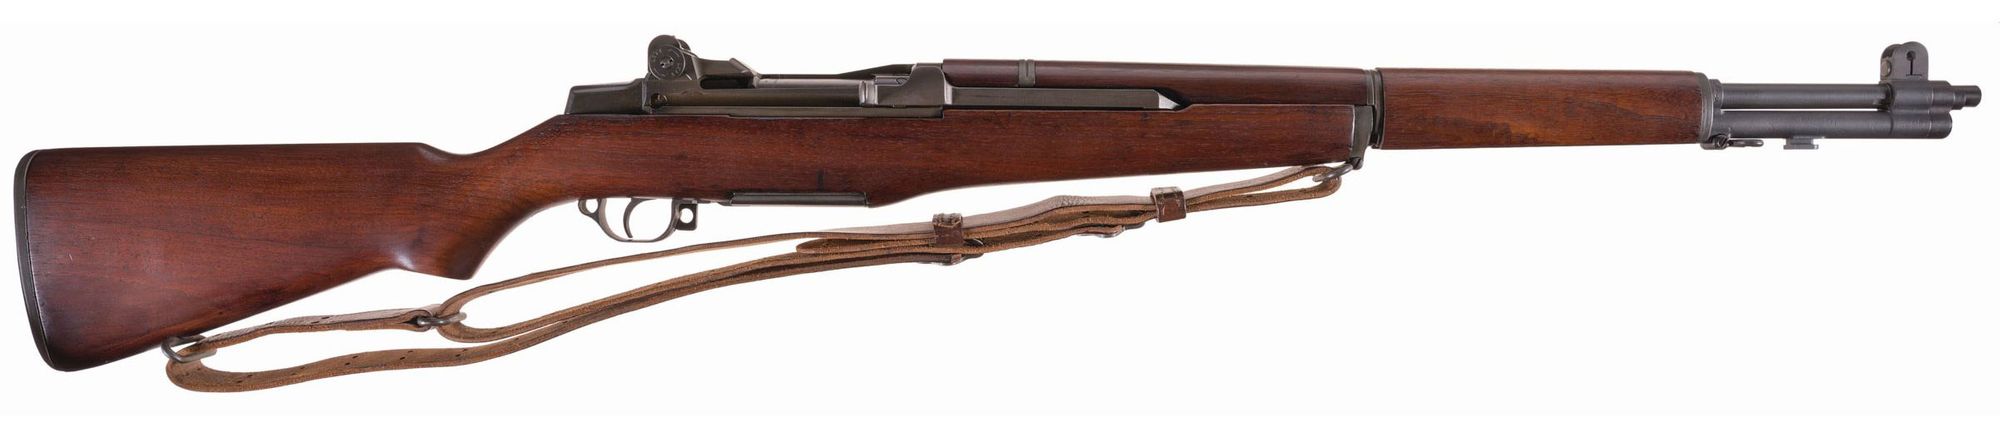 M1 Garand rifle